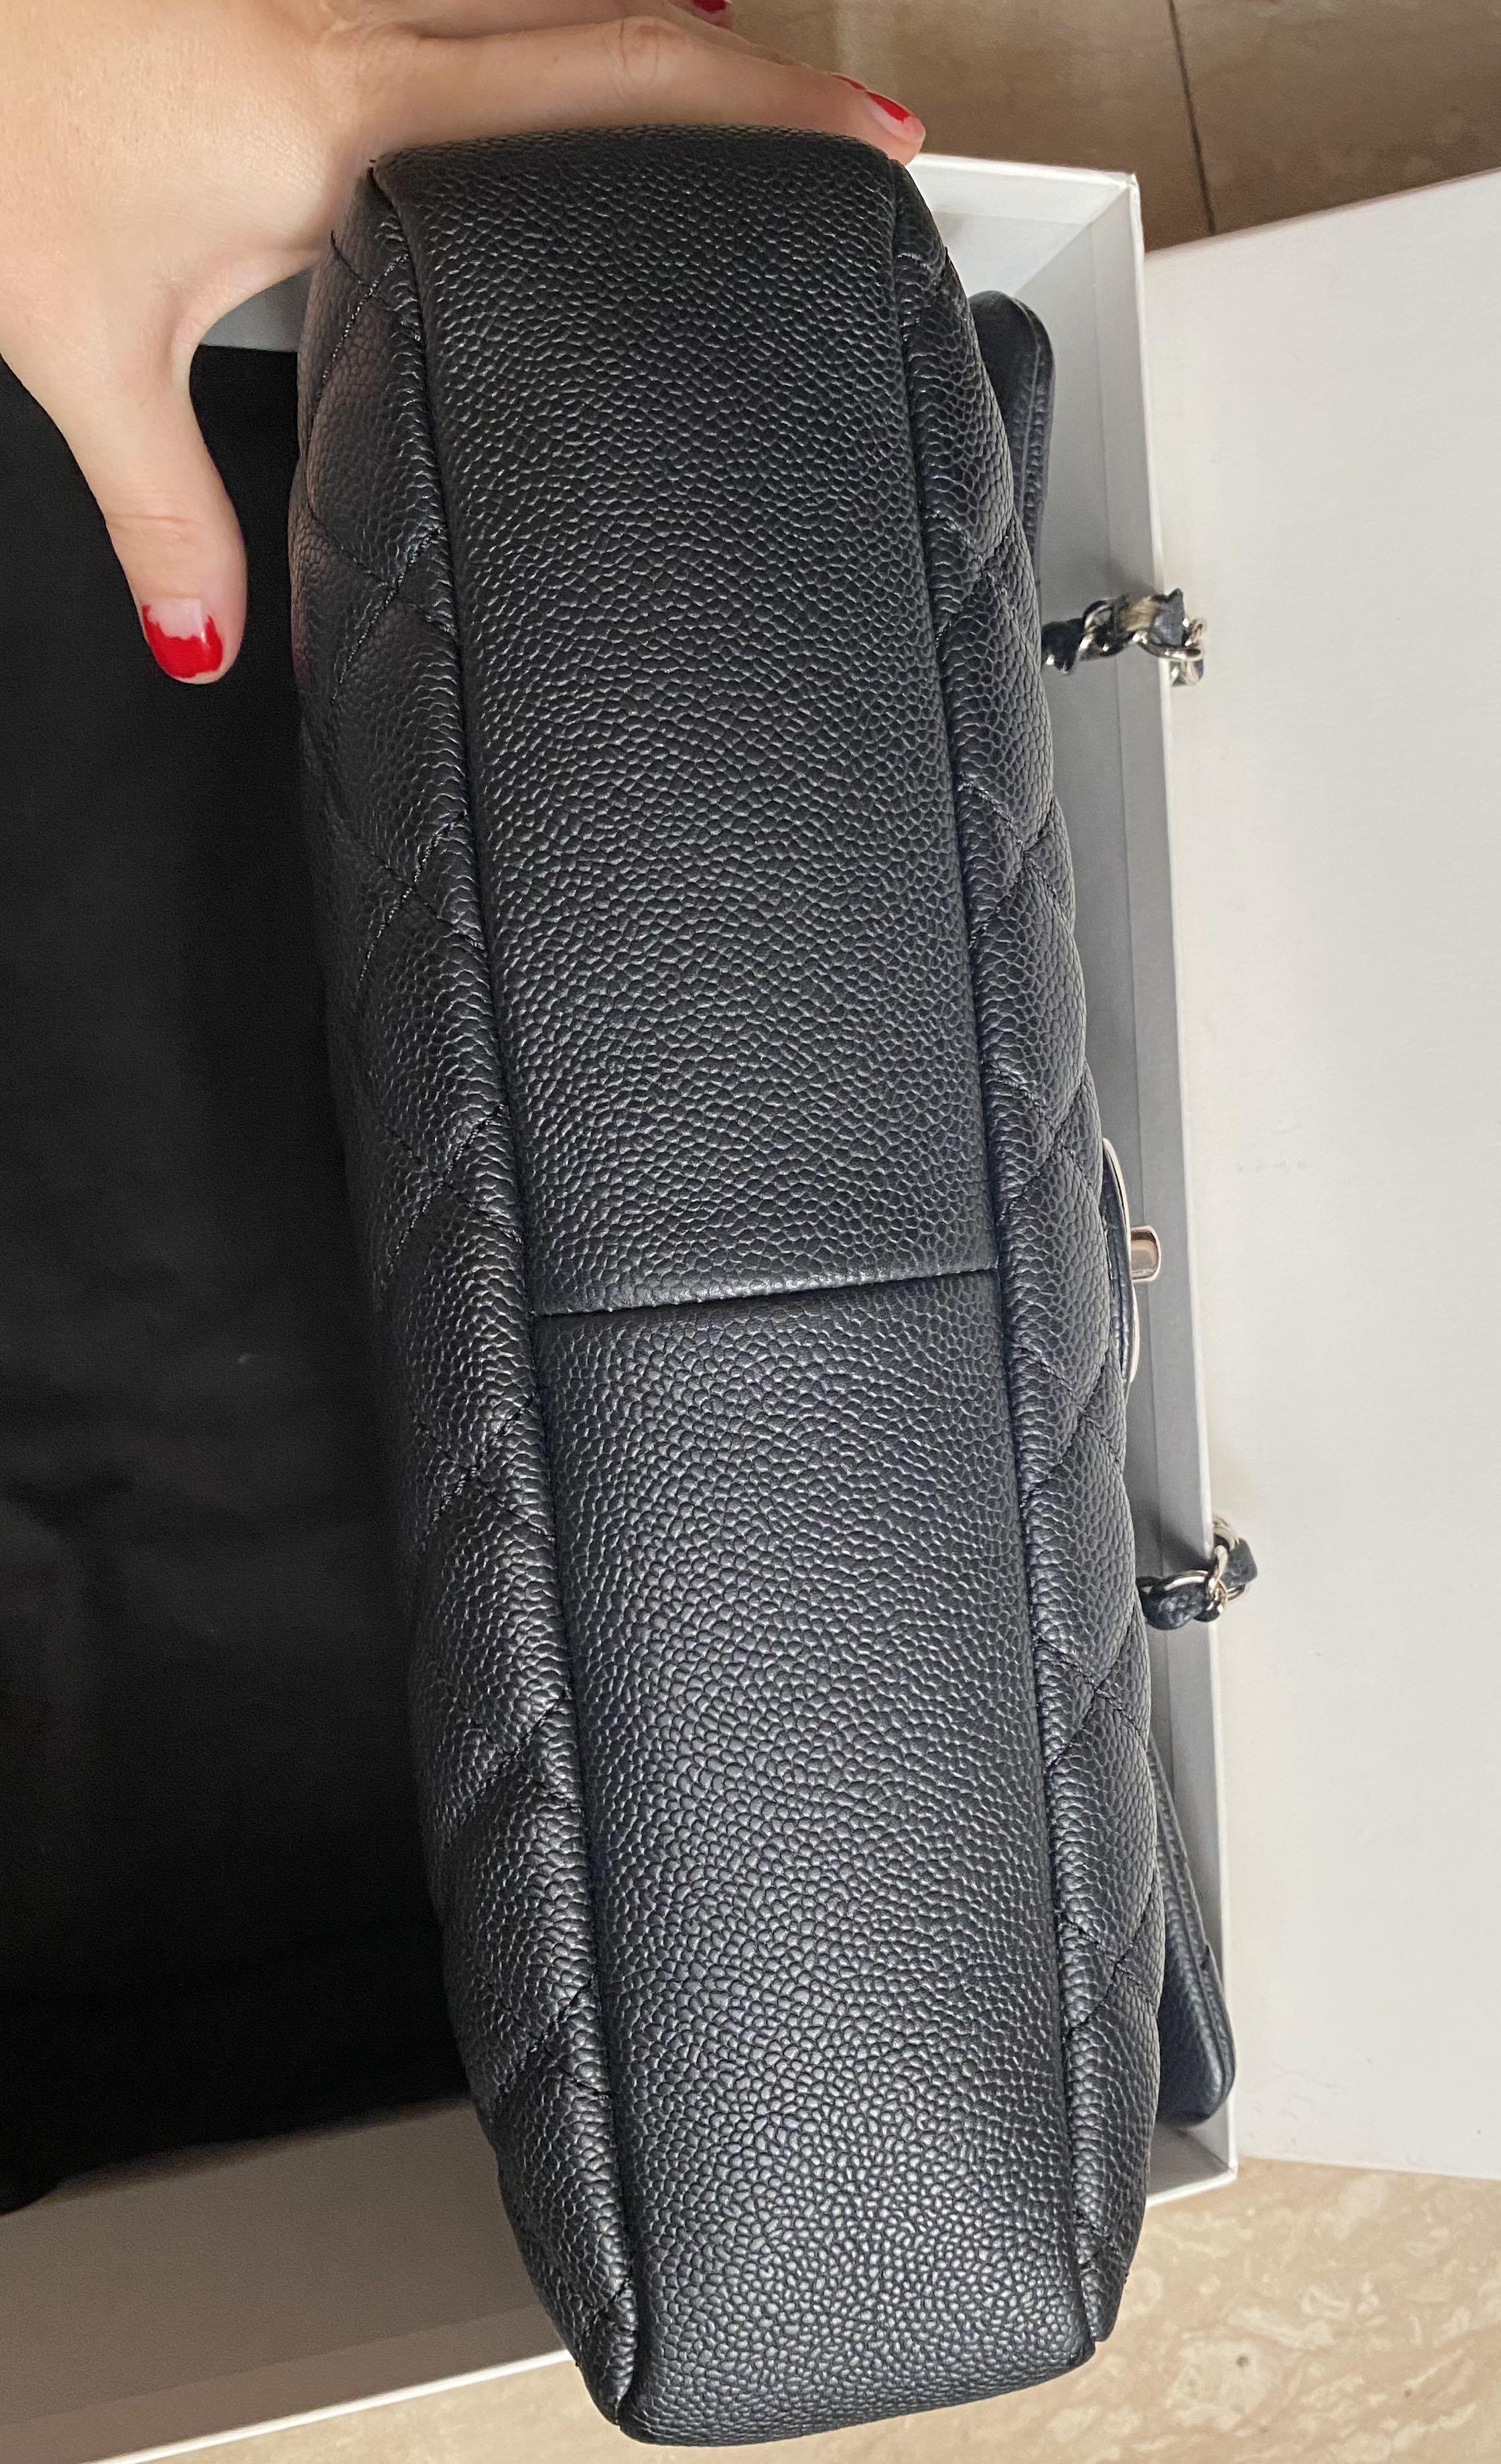 Chanel easy flap in caviar jumbo size, Luxury, Bags & Wallets on